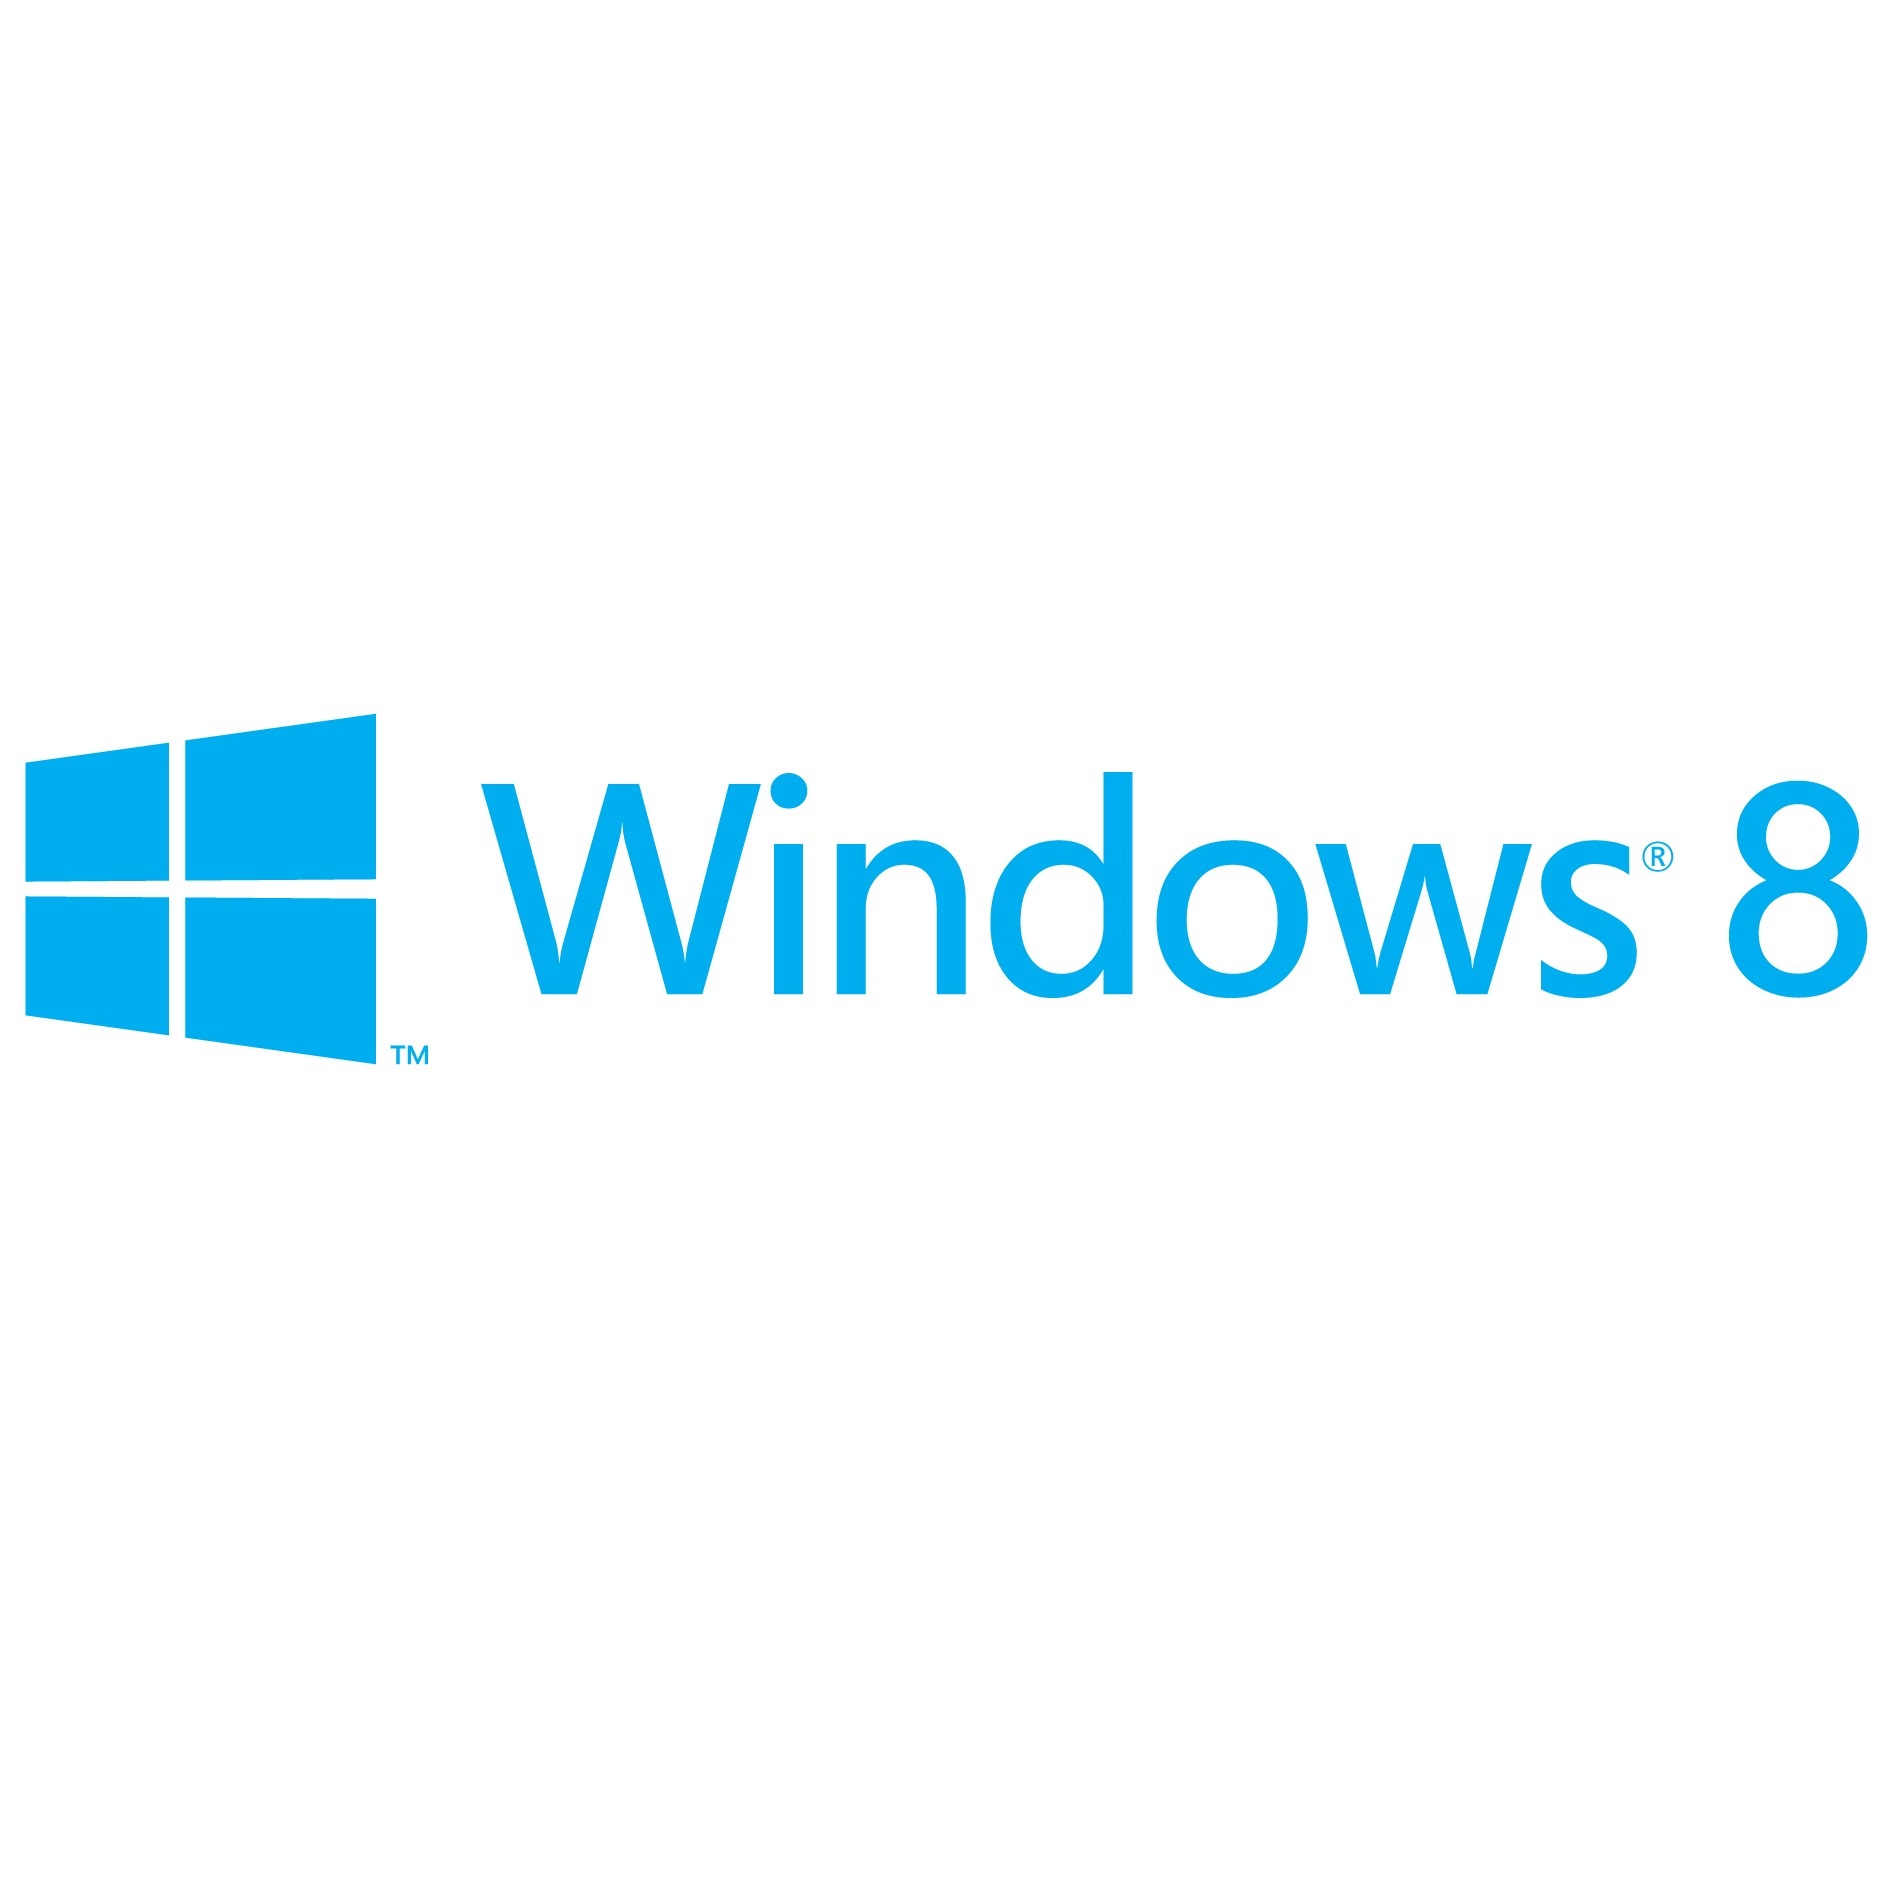 Новото лого на Windows е прозорец, а не знаме